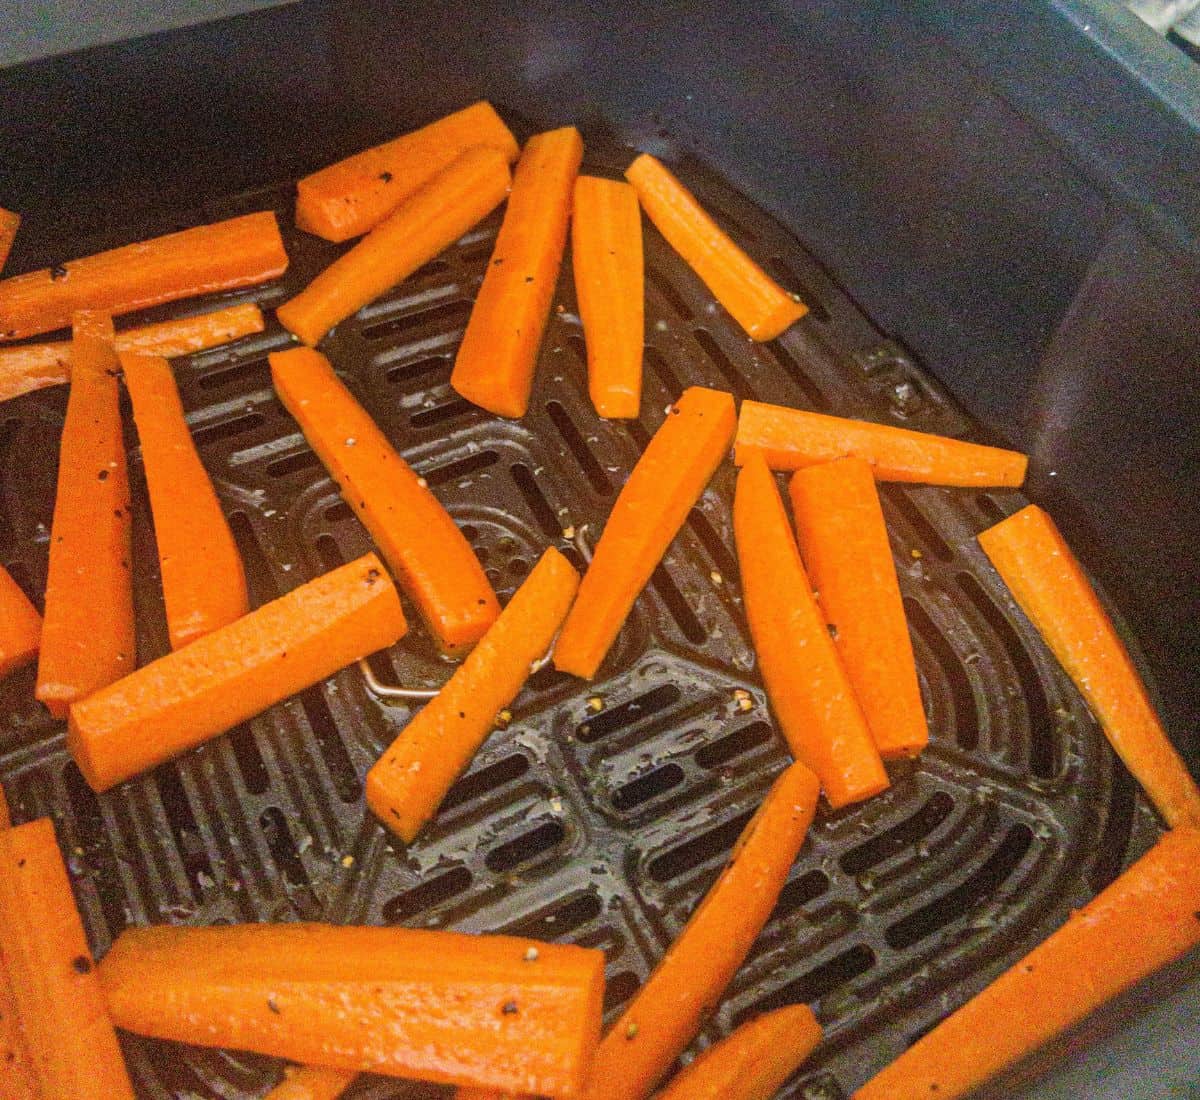 Carrot sticks in an air fryer basket.